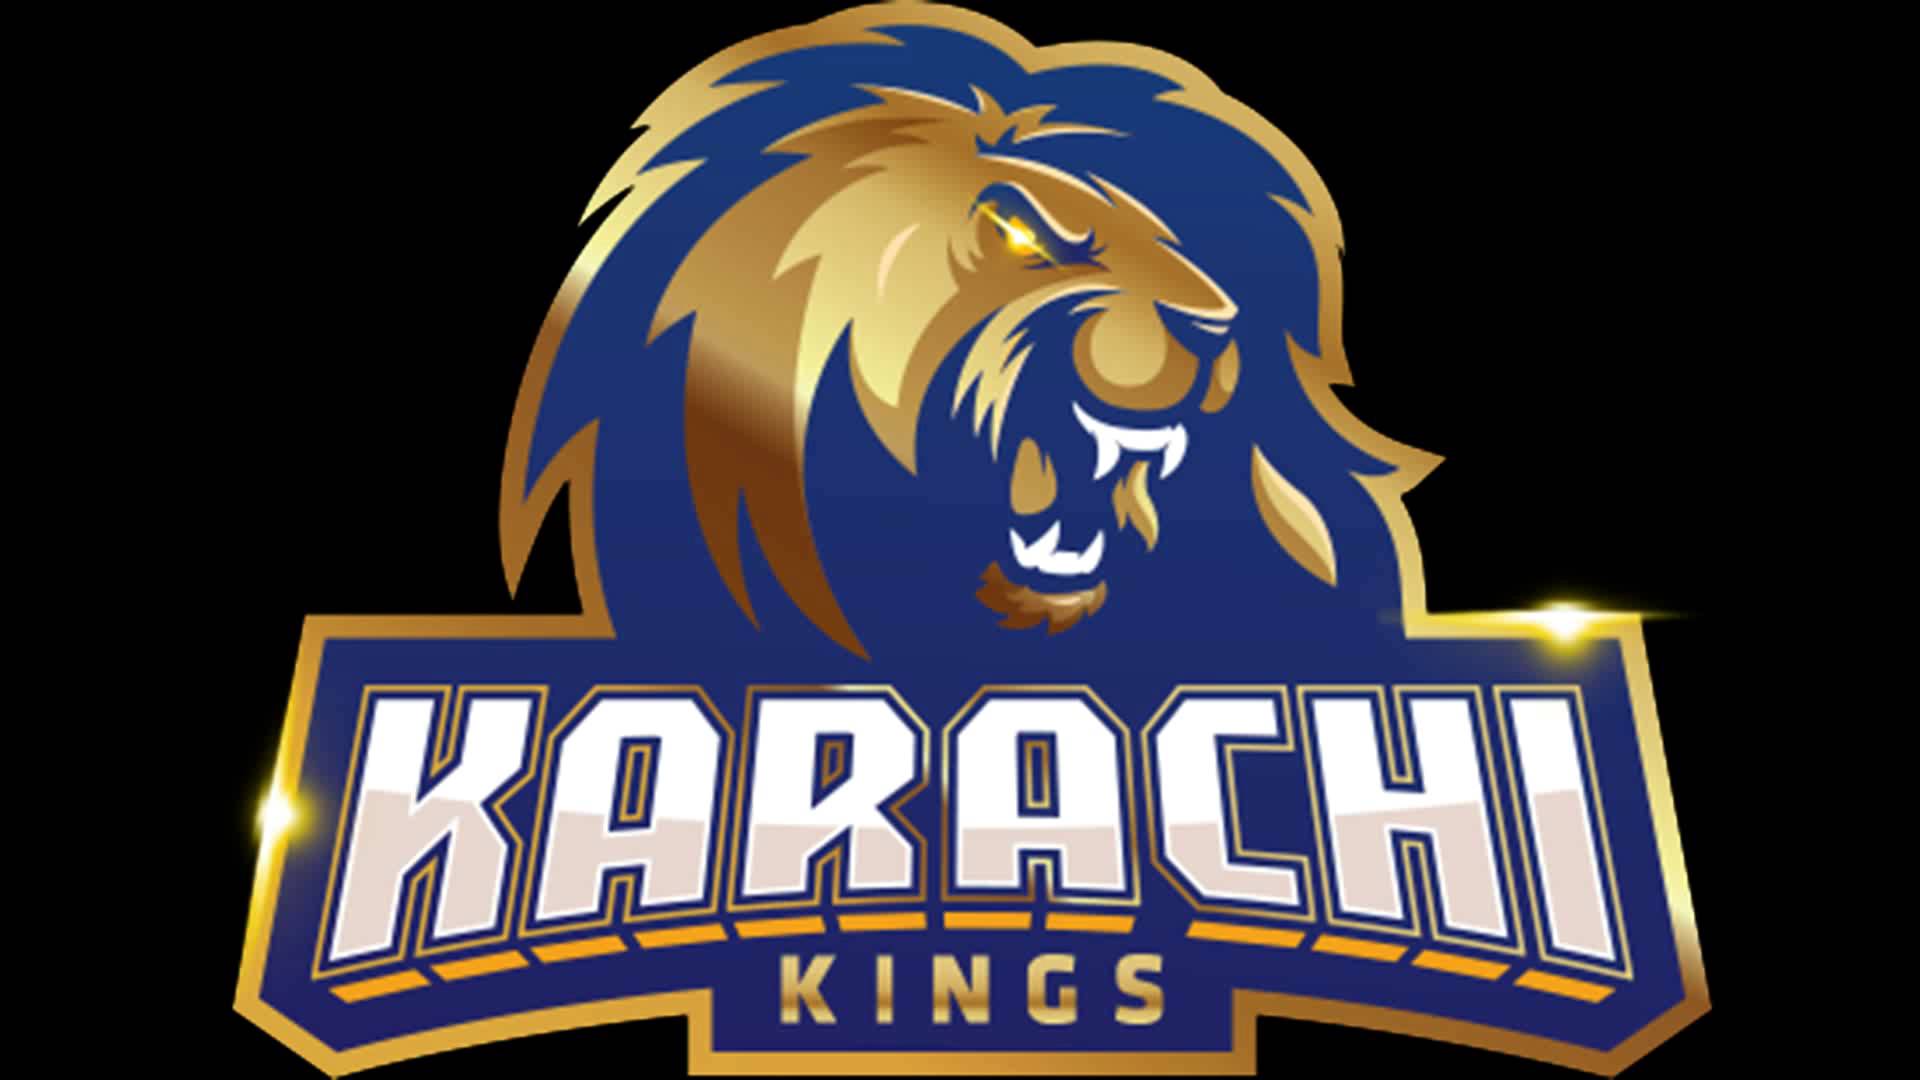 Karachi Kings Logo - 1920x1080 Wallpaper 